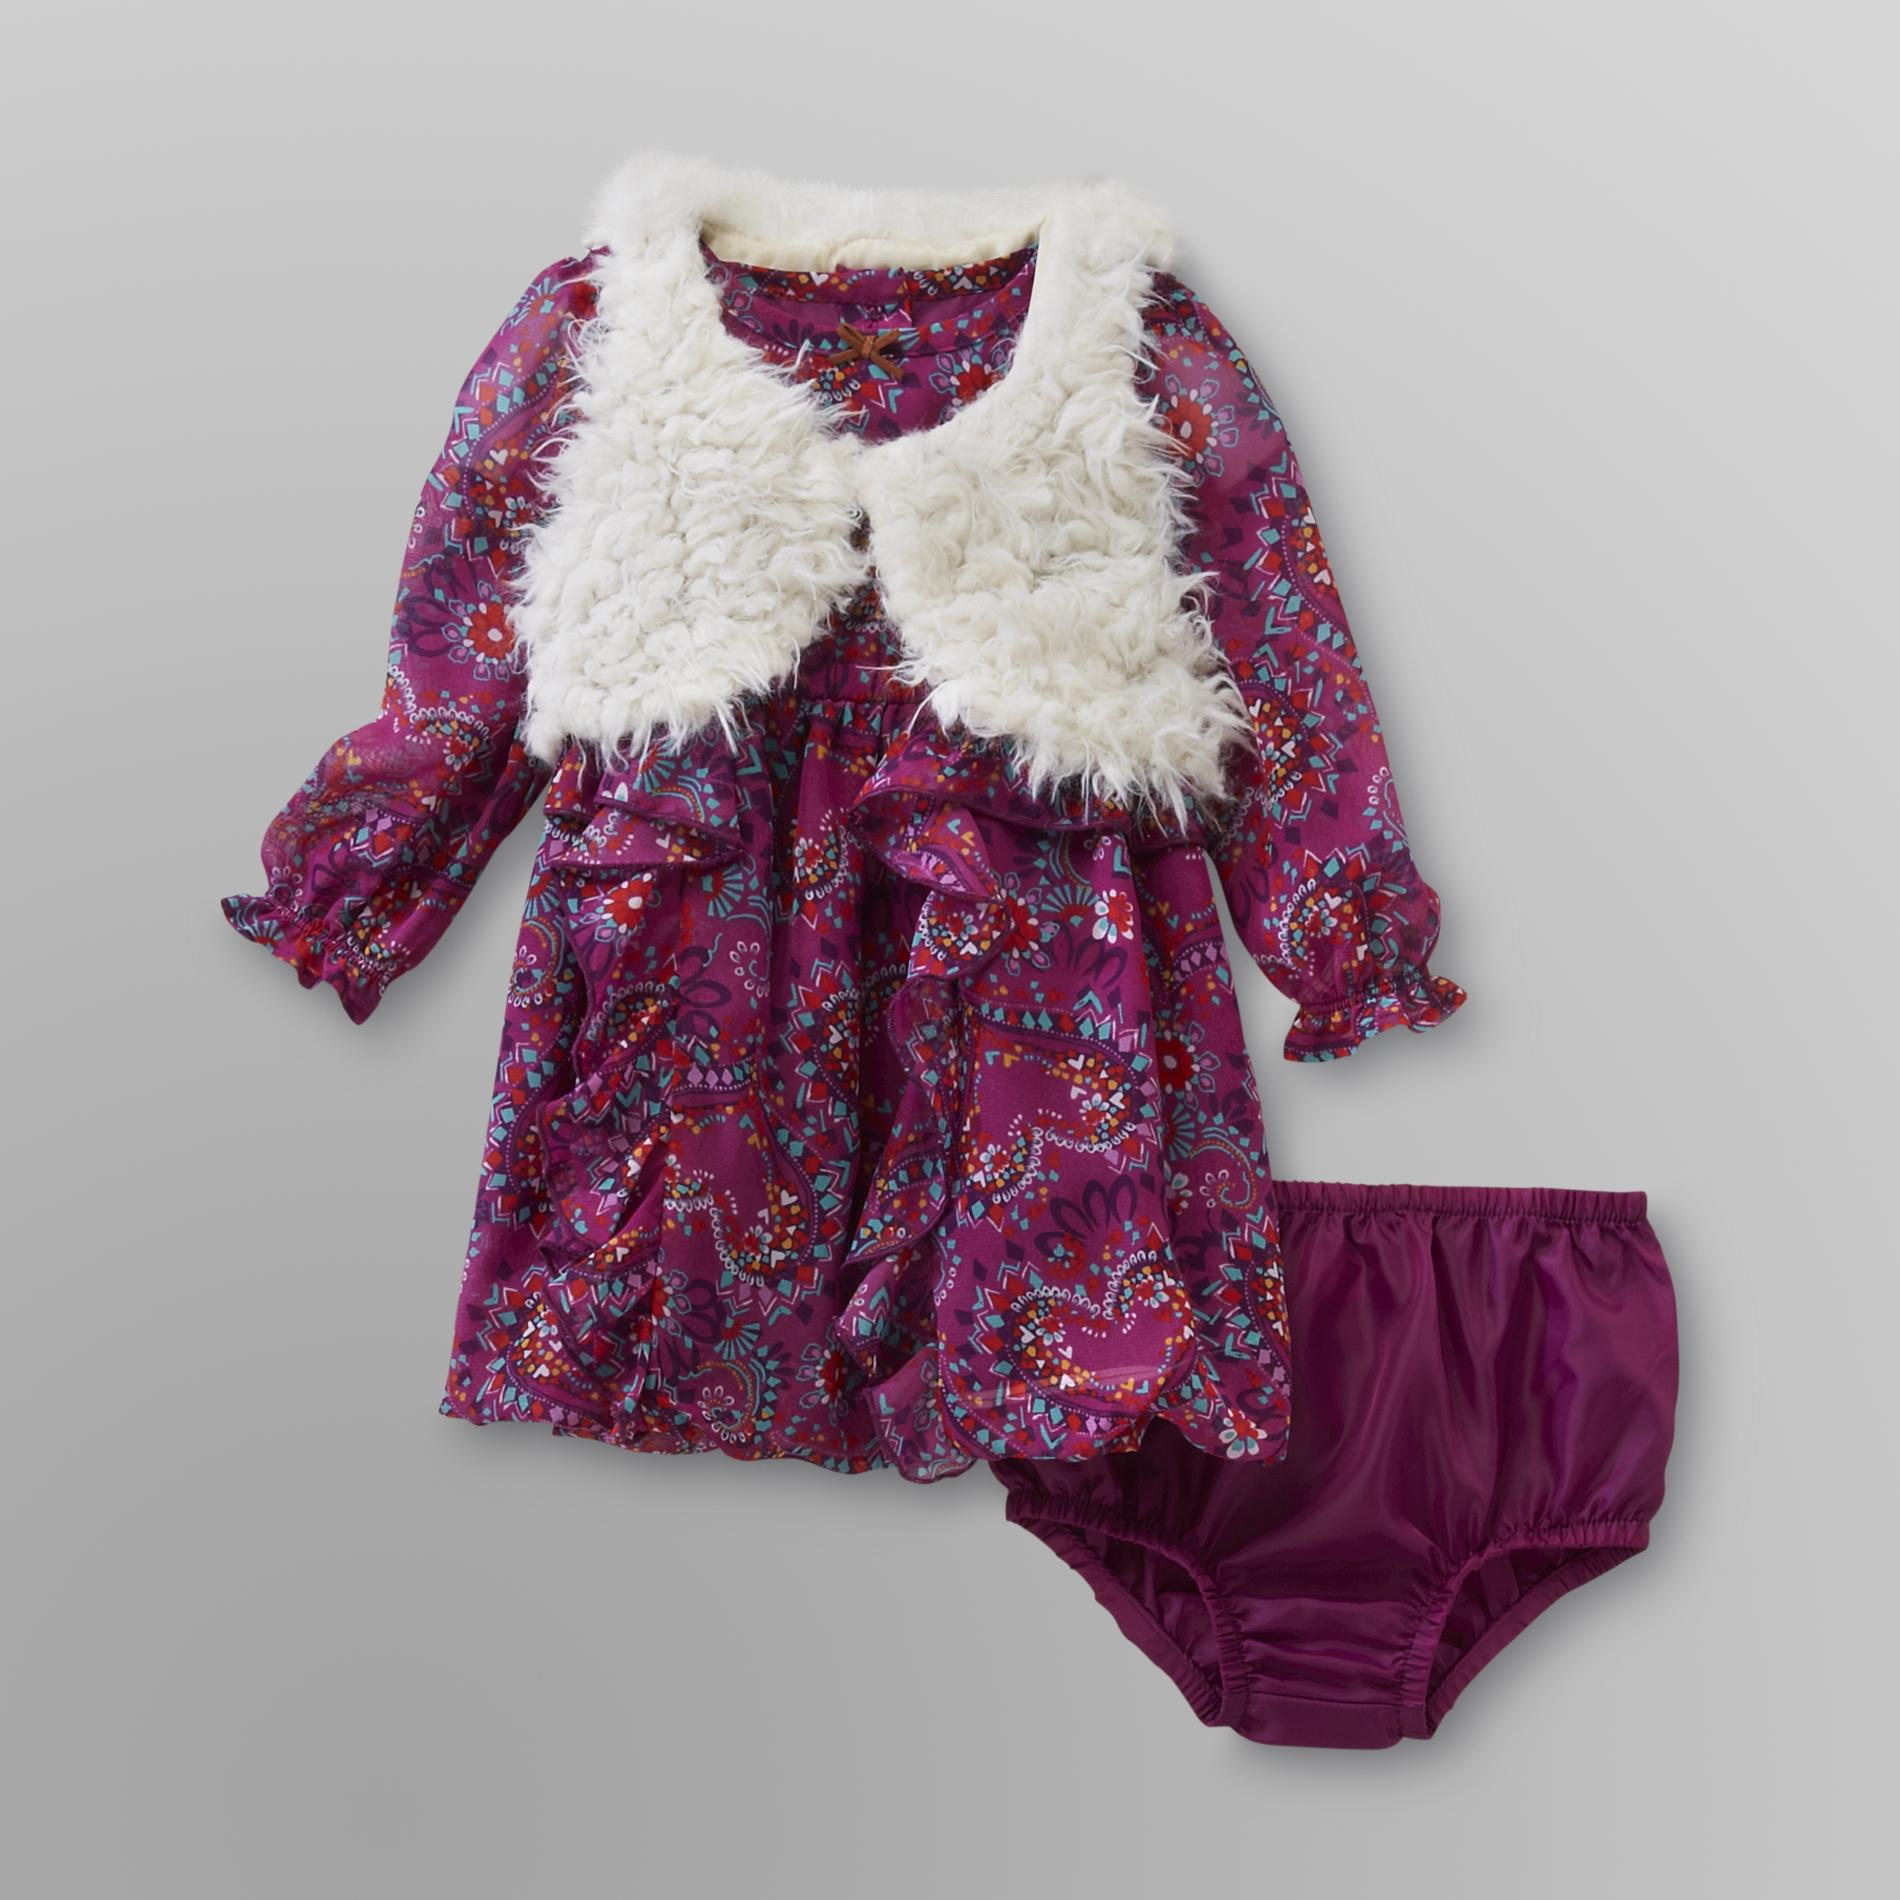 Route 66 Infant Girl's Chiffon Dress & Vest